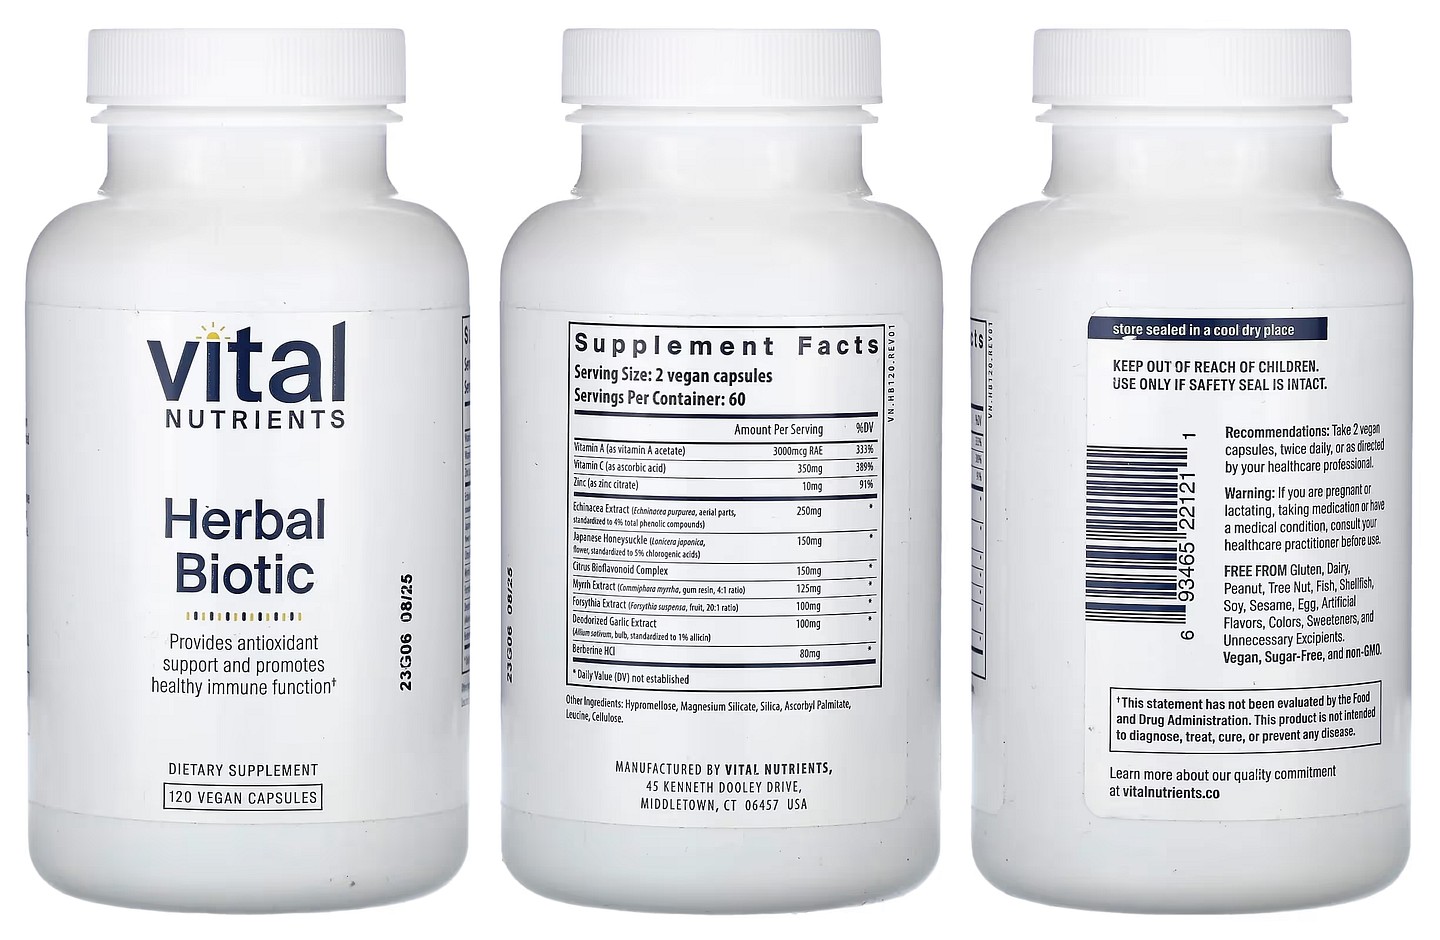 Vital Nutrients, Herbal Biotic packaging